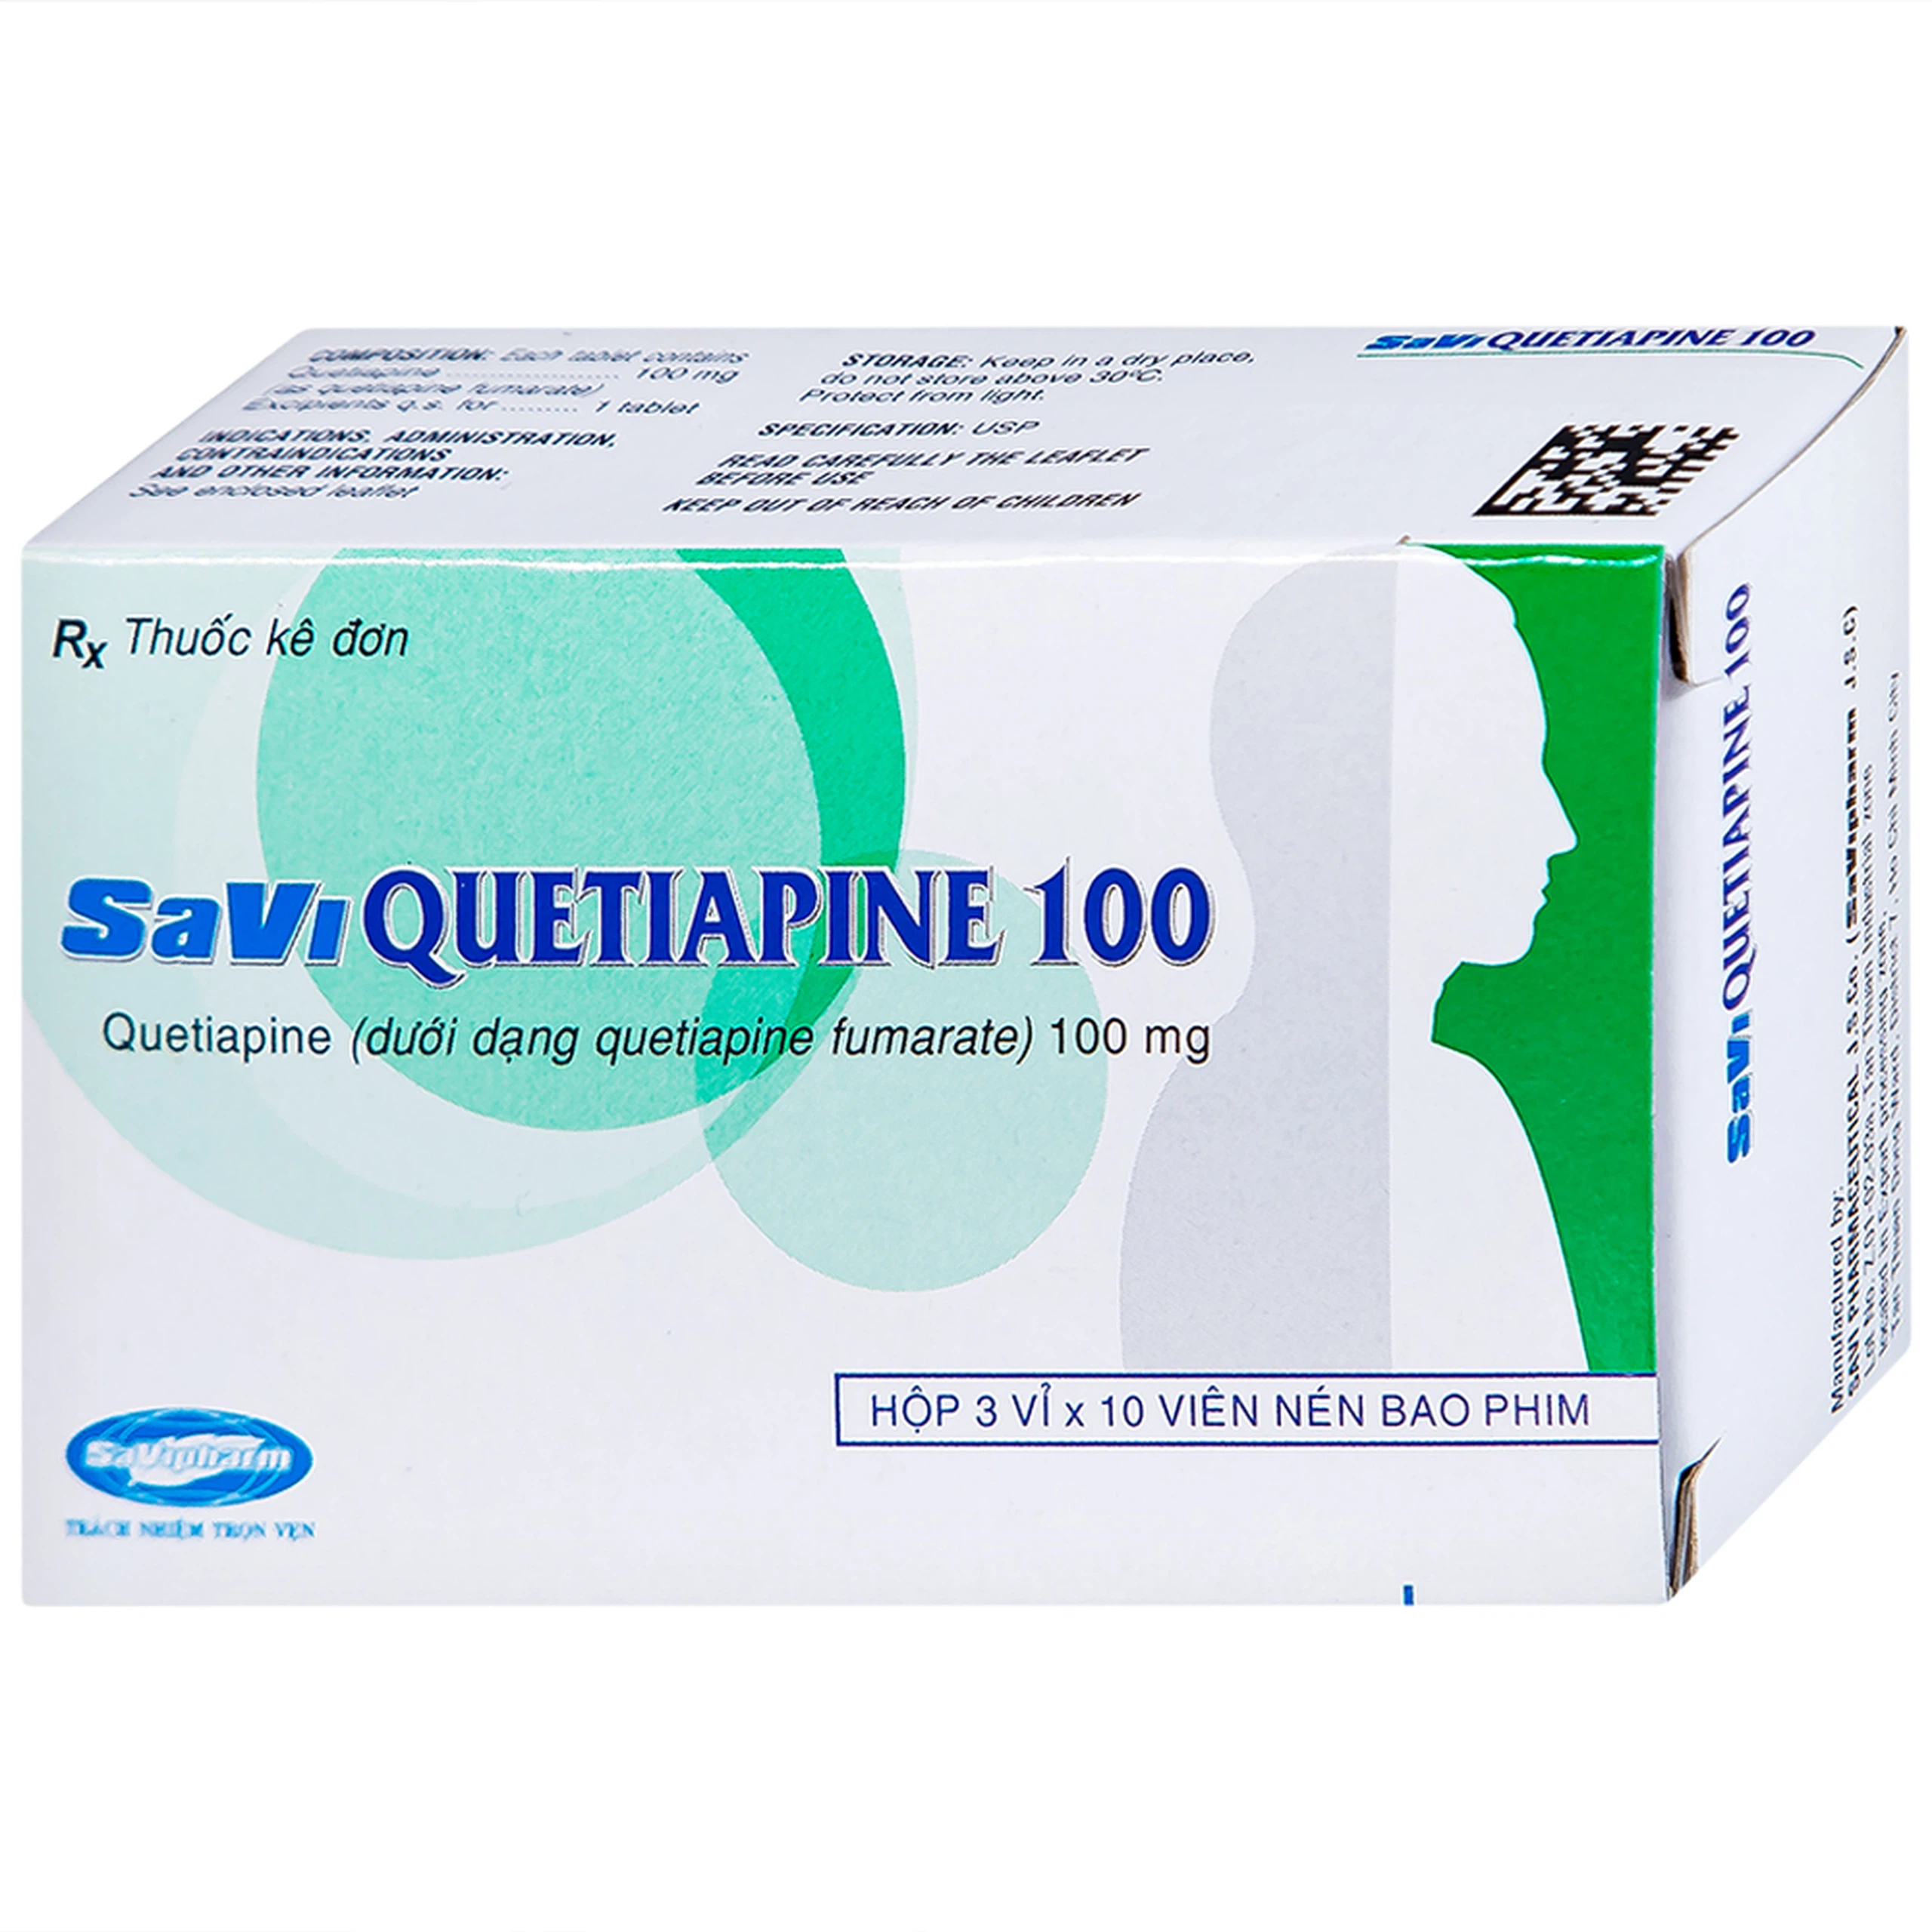 Thuốc Savi Quetiapine 100 điều trị tâm thần phân liệt (3 vỉ x 10 viên)